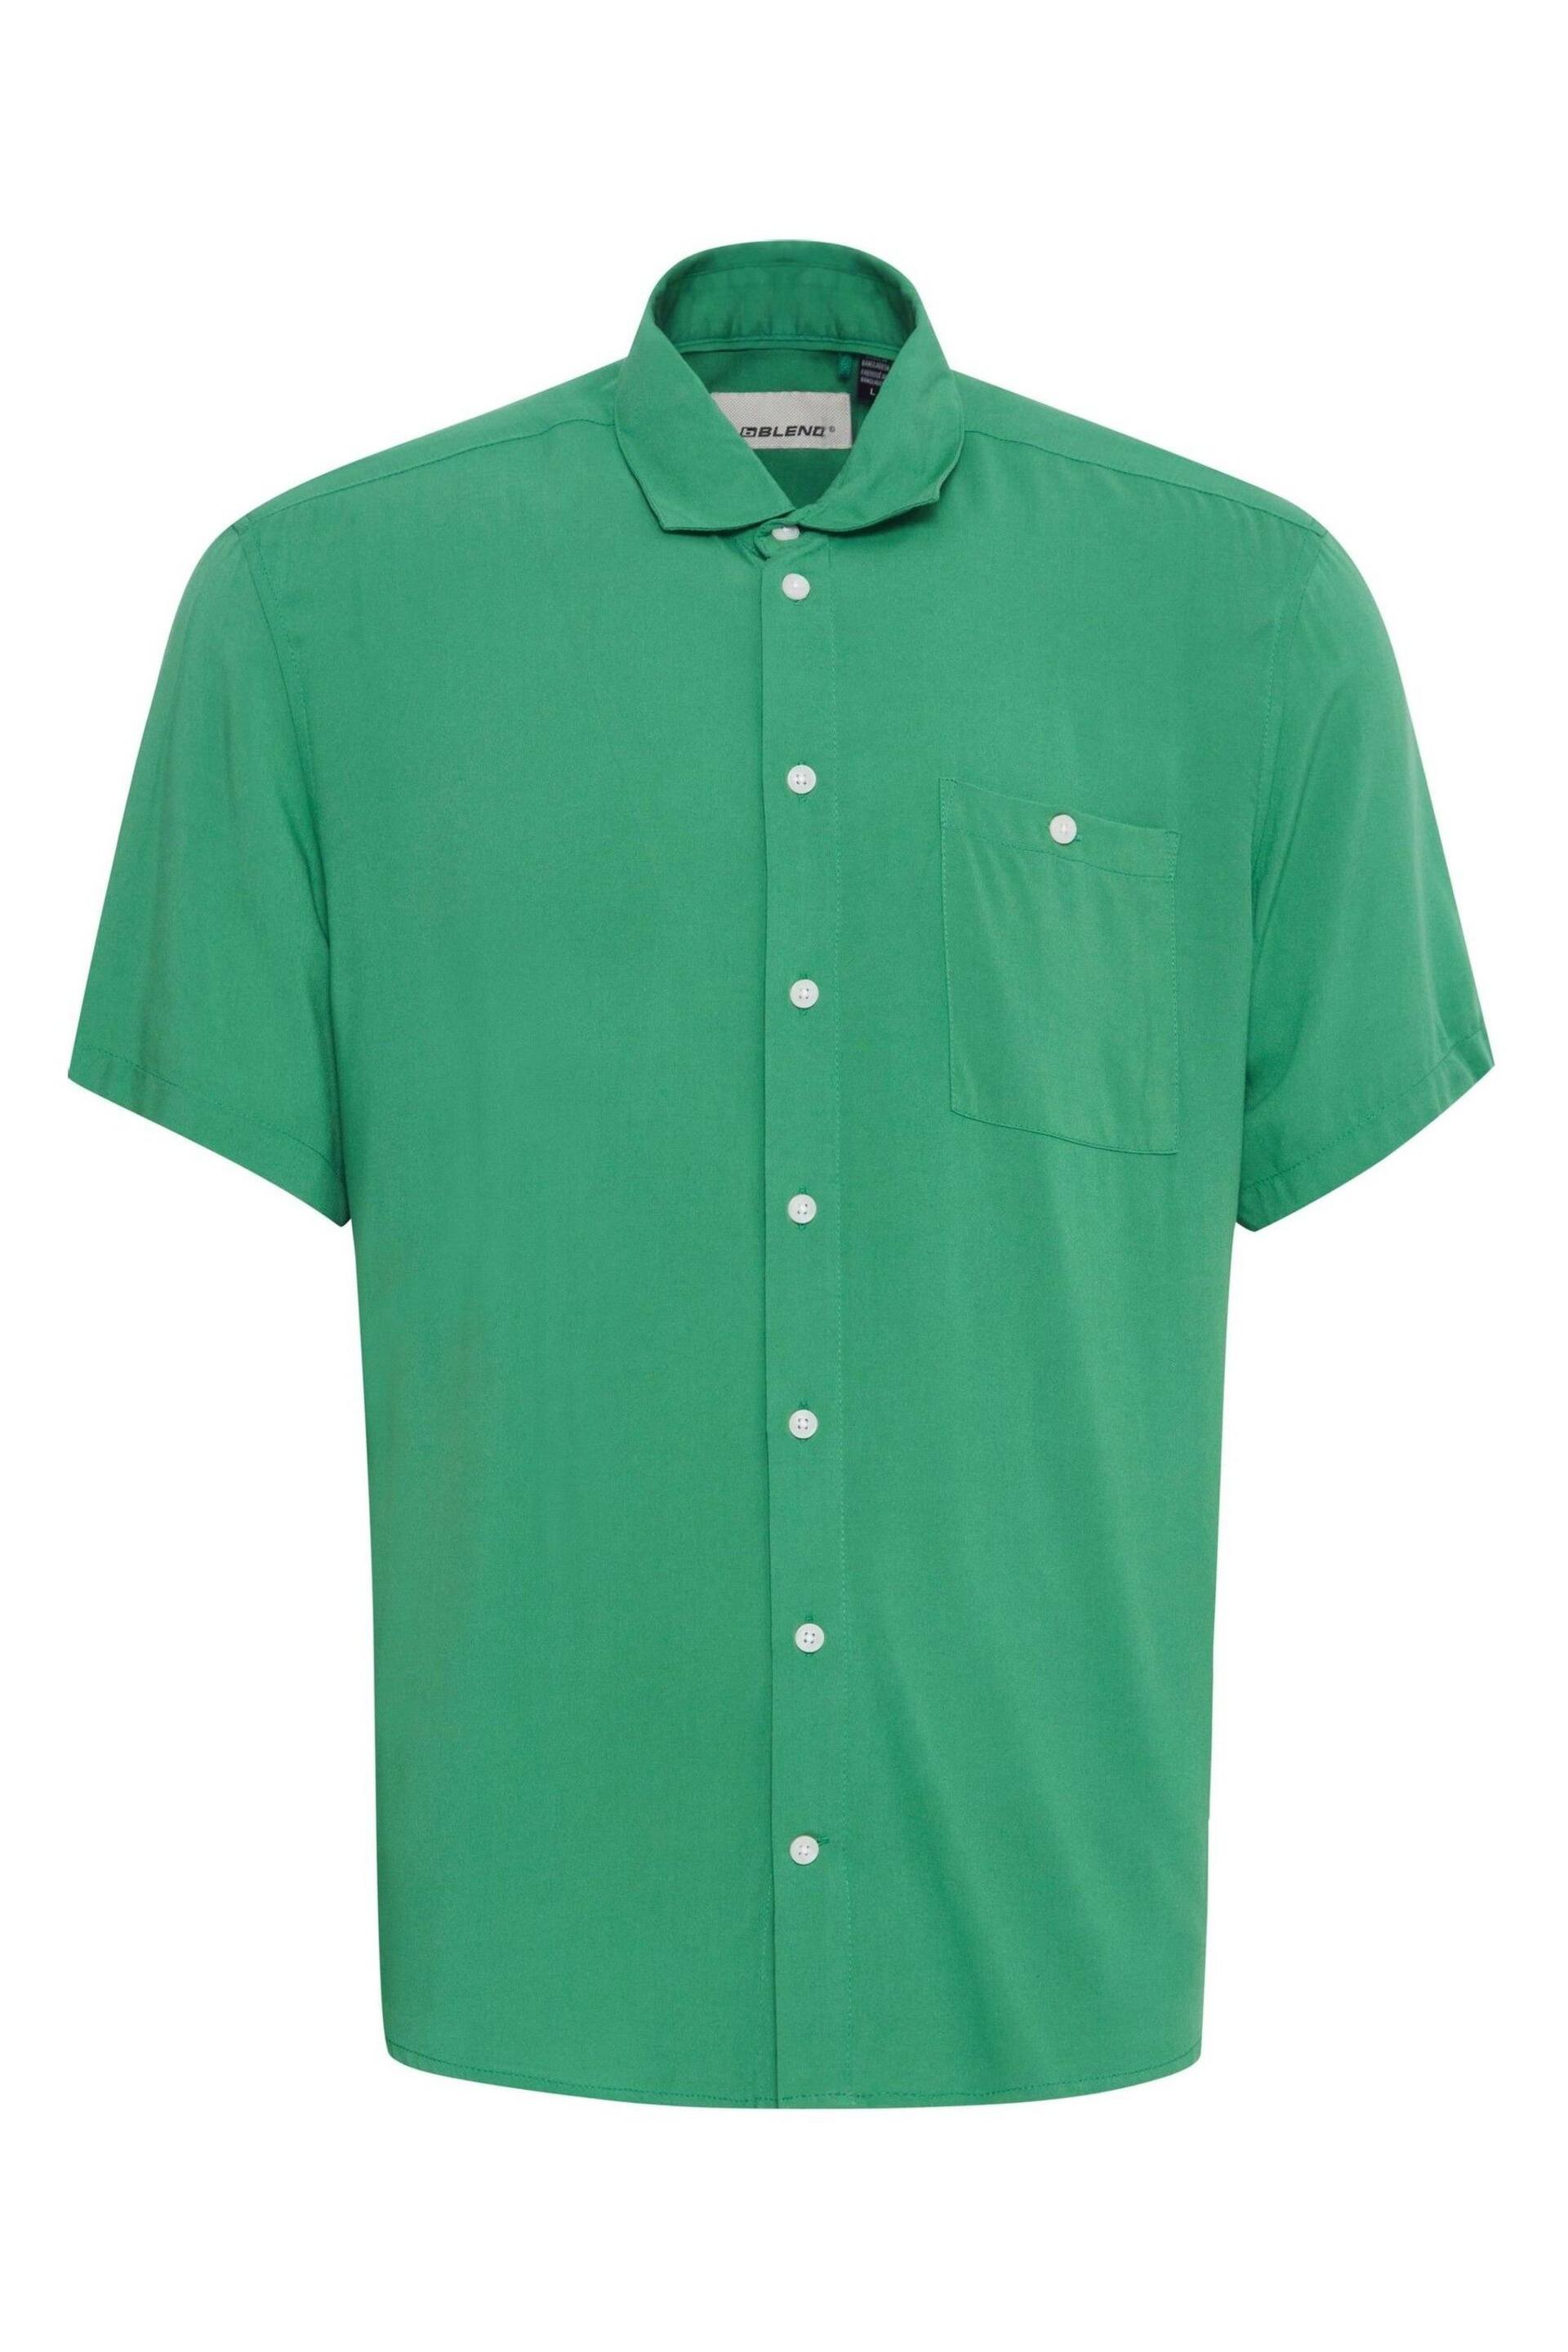 Blend Green Short Sleeve Shirt - Image 5 of 5